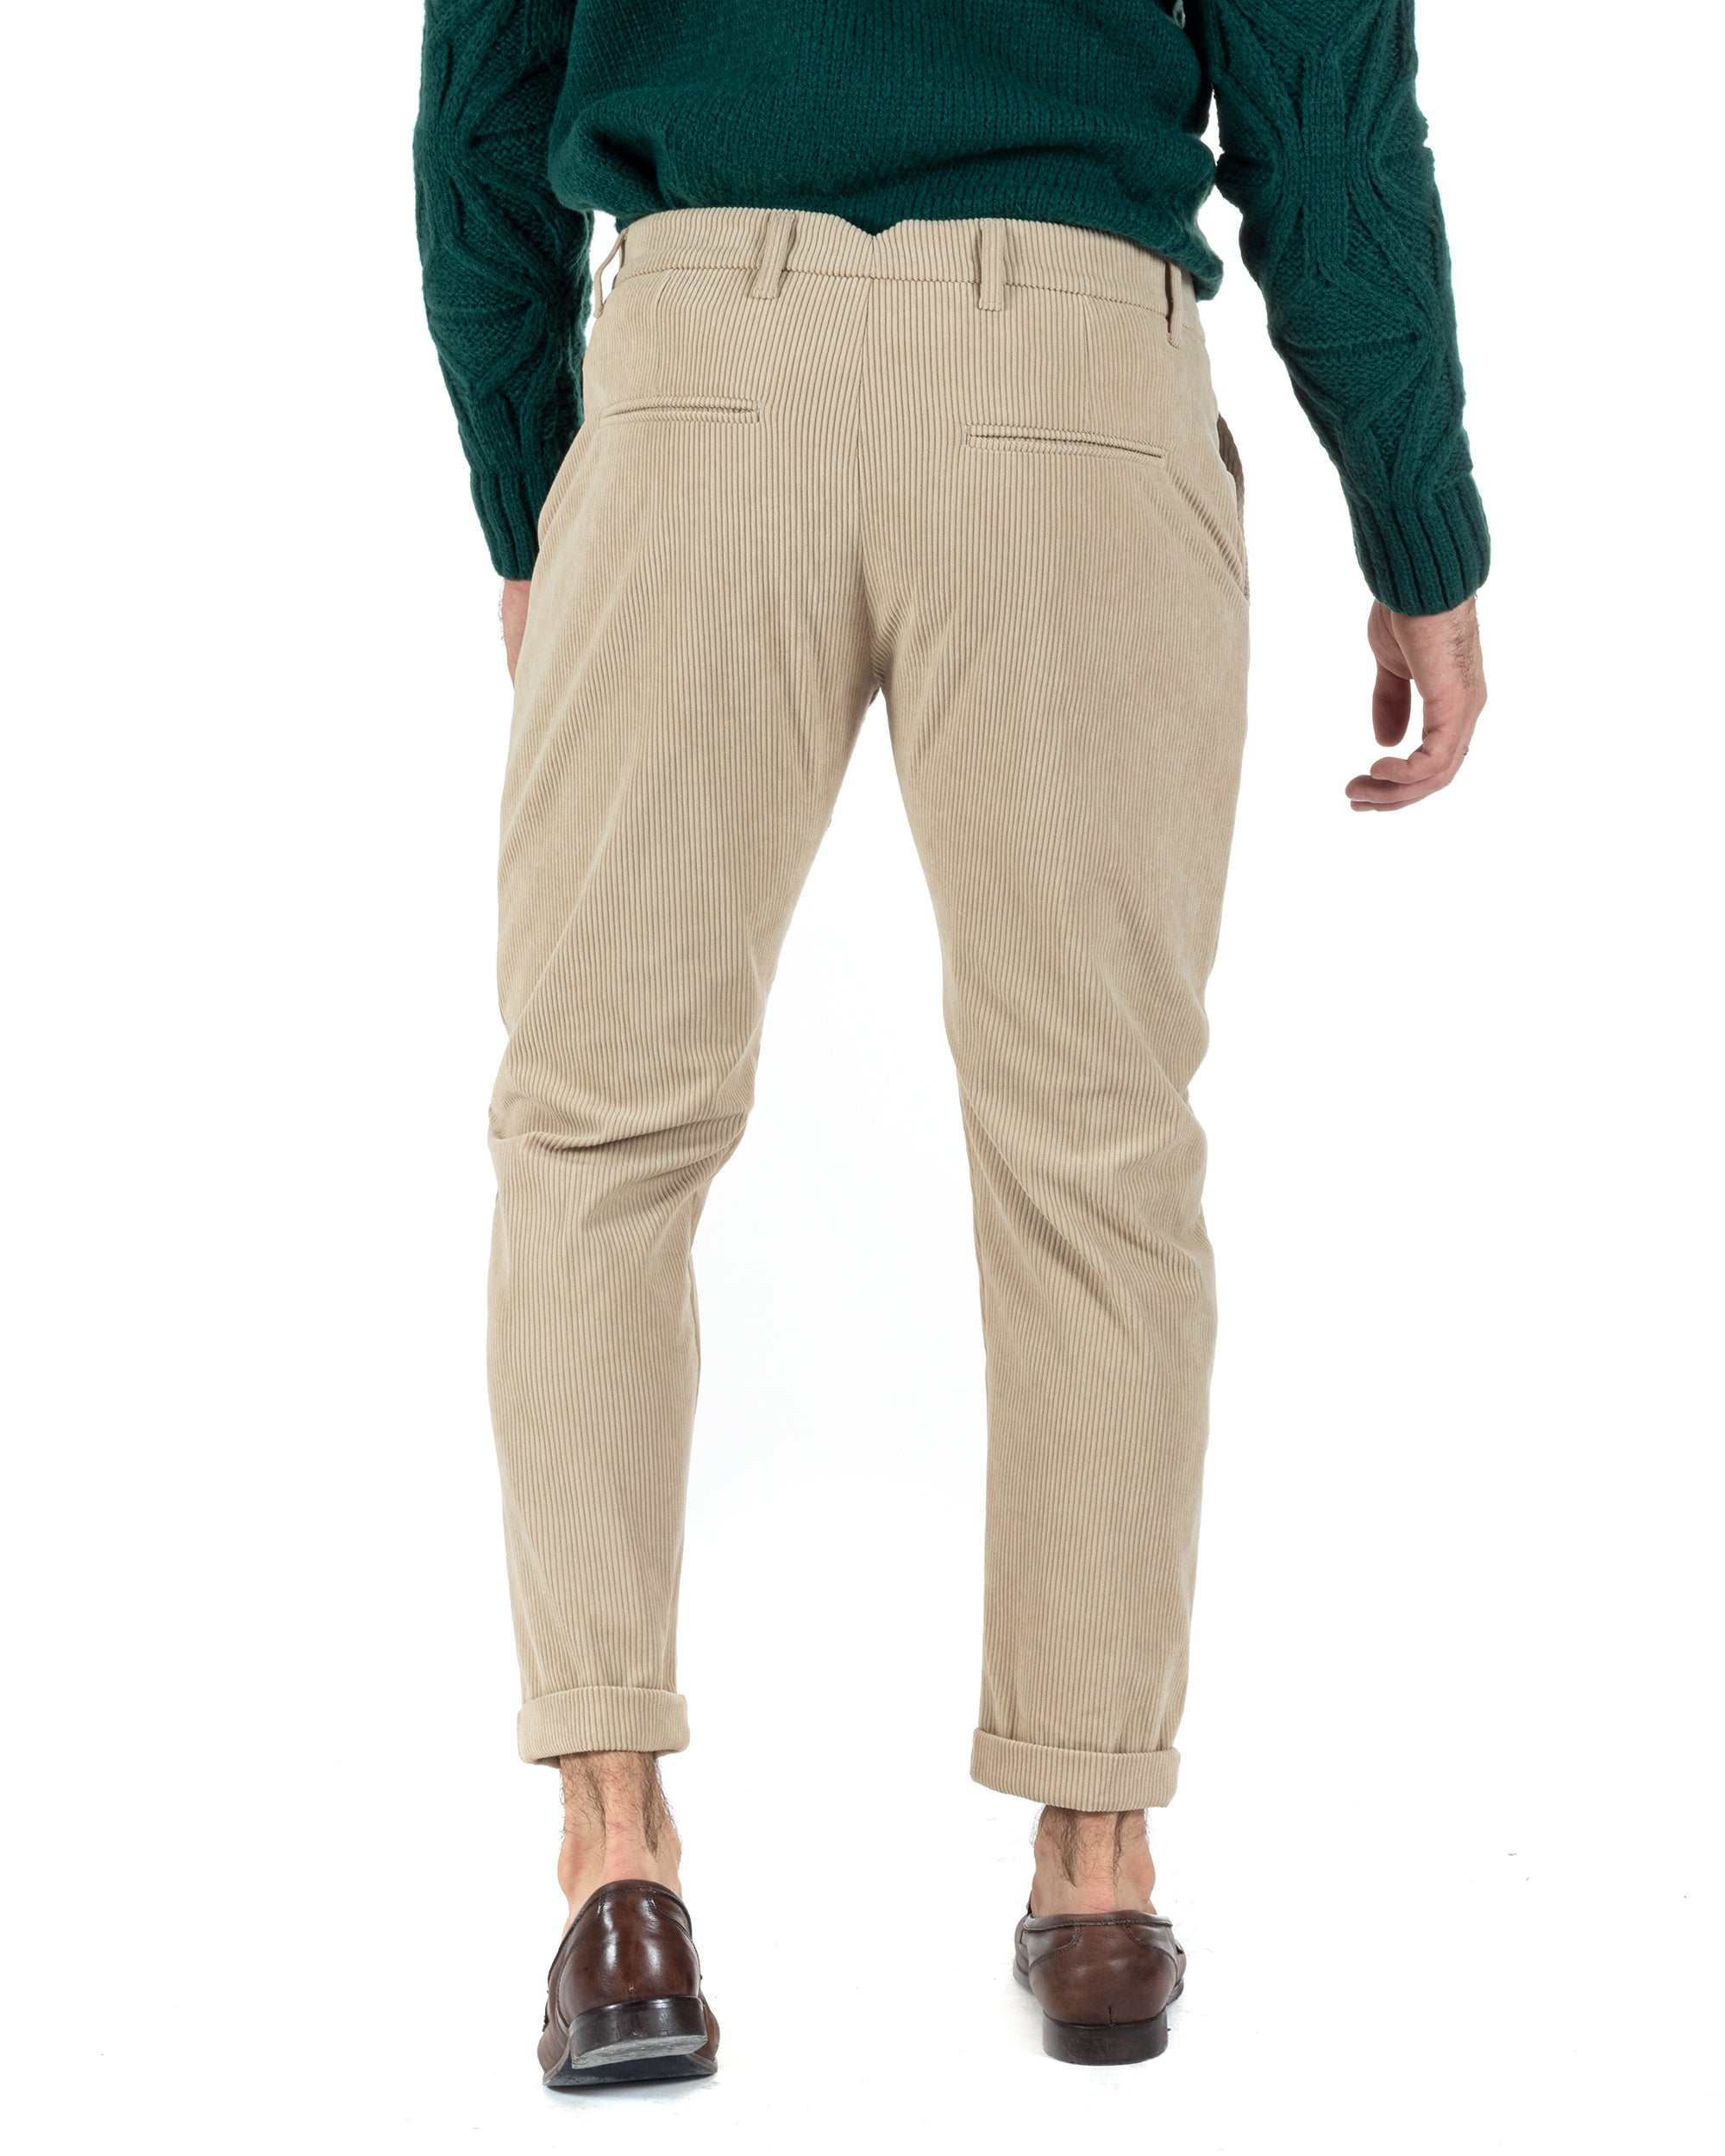 Pantaloni Uomo Tasca America Classico Velluto Costine Beige Casual GIOSAL-P6003A